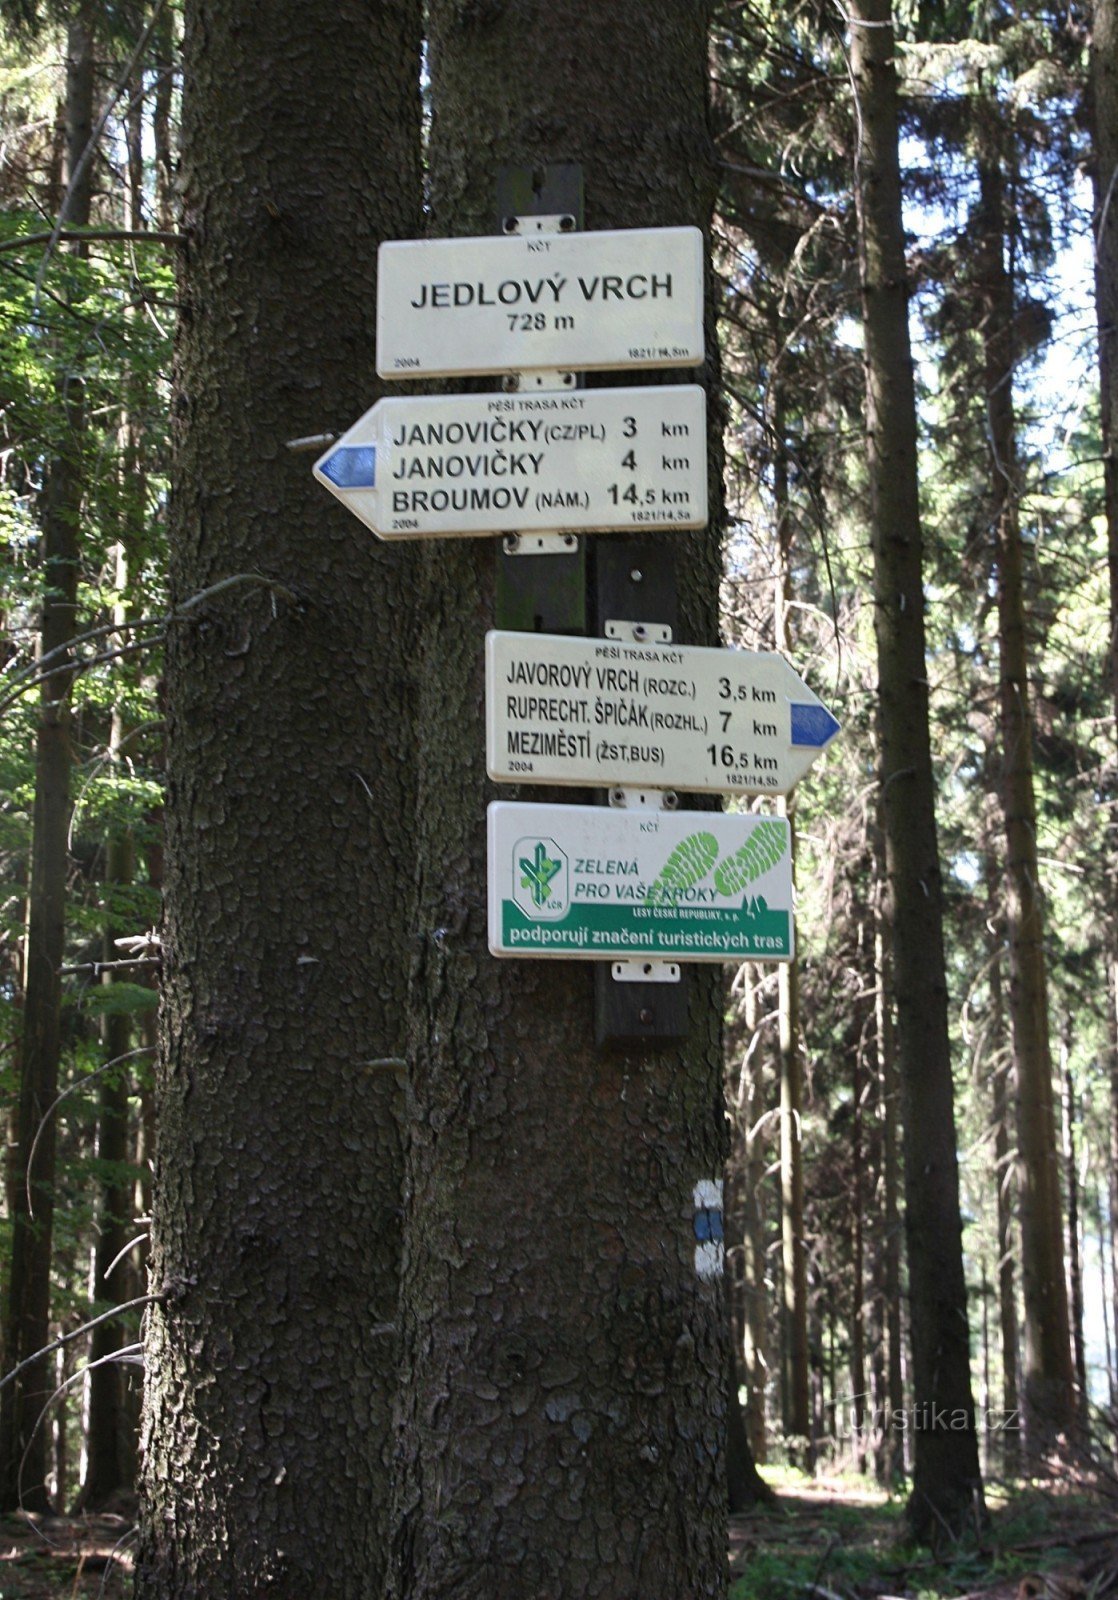 1-Signpost on Jedlové vrch